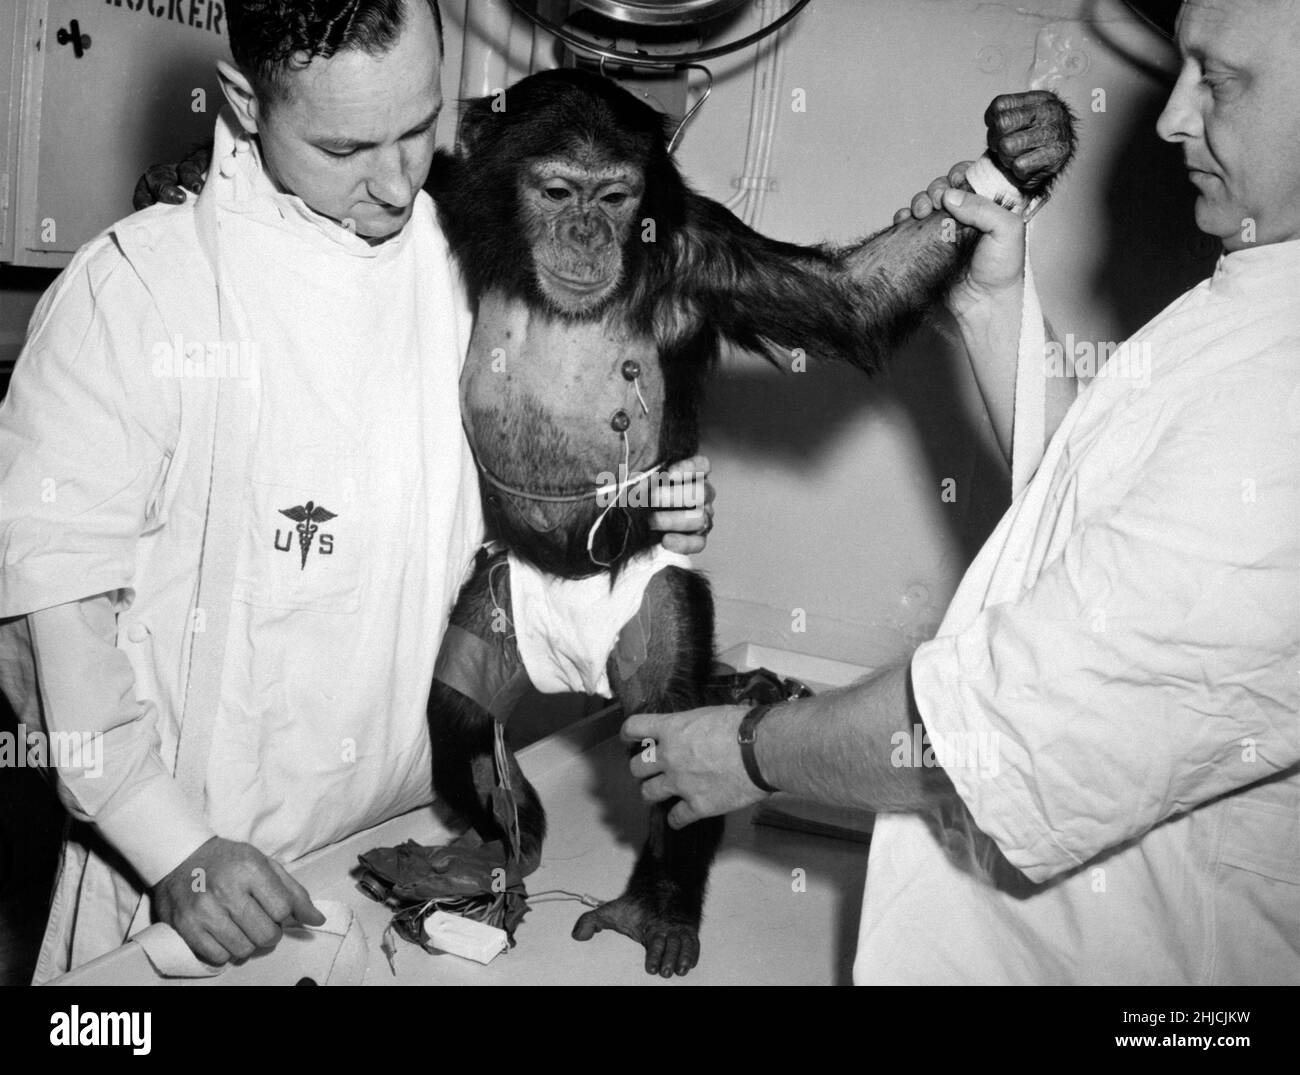 Ham le chimp avec des bio-capteurs attachés à son corps est réadié par des maîtres pour son voyage dans le vaisseau spatial Mequry-Redstone 2.Le 31 janvier 1961, un lancement Mercury-Redstone à partir de Cape Canaveral a porté le chimpanzé, Ham, sur une distance de plus de 400 miles dans une trajectoire voûtée qui a atteint un sommet de 158 miles au-dessus de la Terre.La mission a été couronnée de succès et Ham a bien effectué sa tâche de traction de levier en réponse au feu clignotant. Banque D'Images